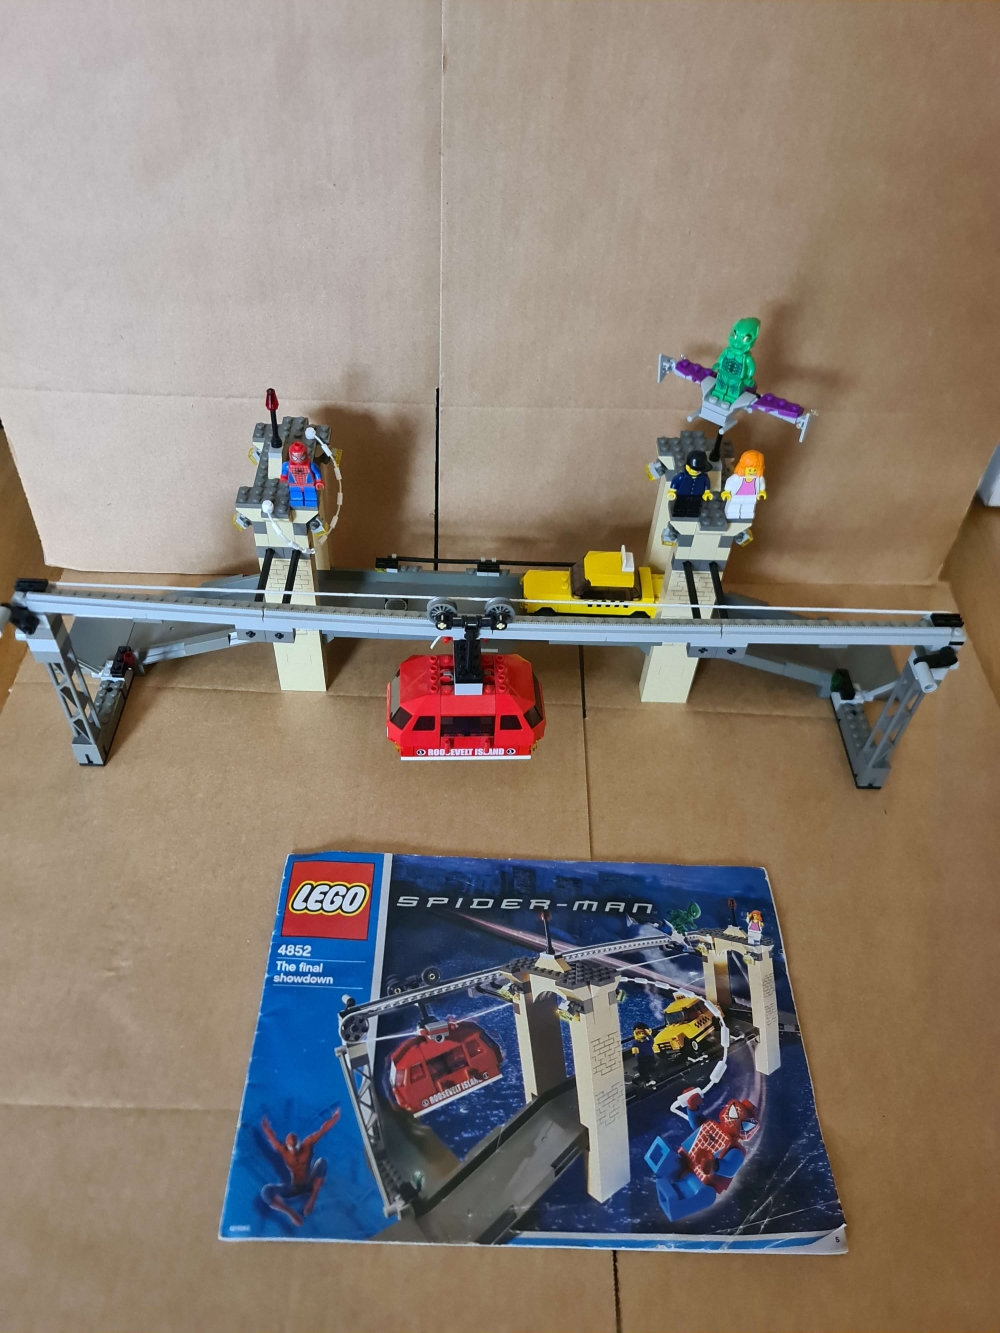 Sett 4852 fra Lego Spider Man serien.

Meget pent sett. Flotte figurer.
100% komplett med manual og alle klistremerker på plass.
